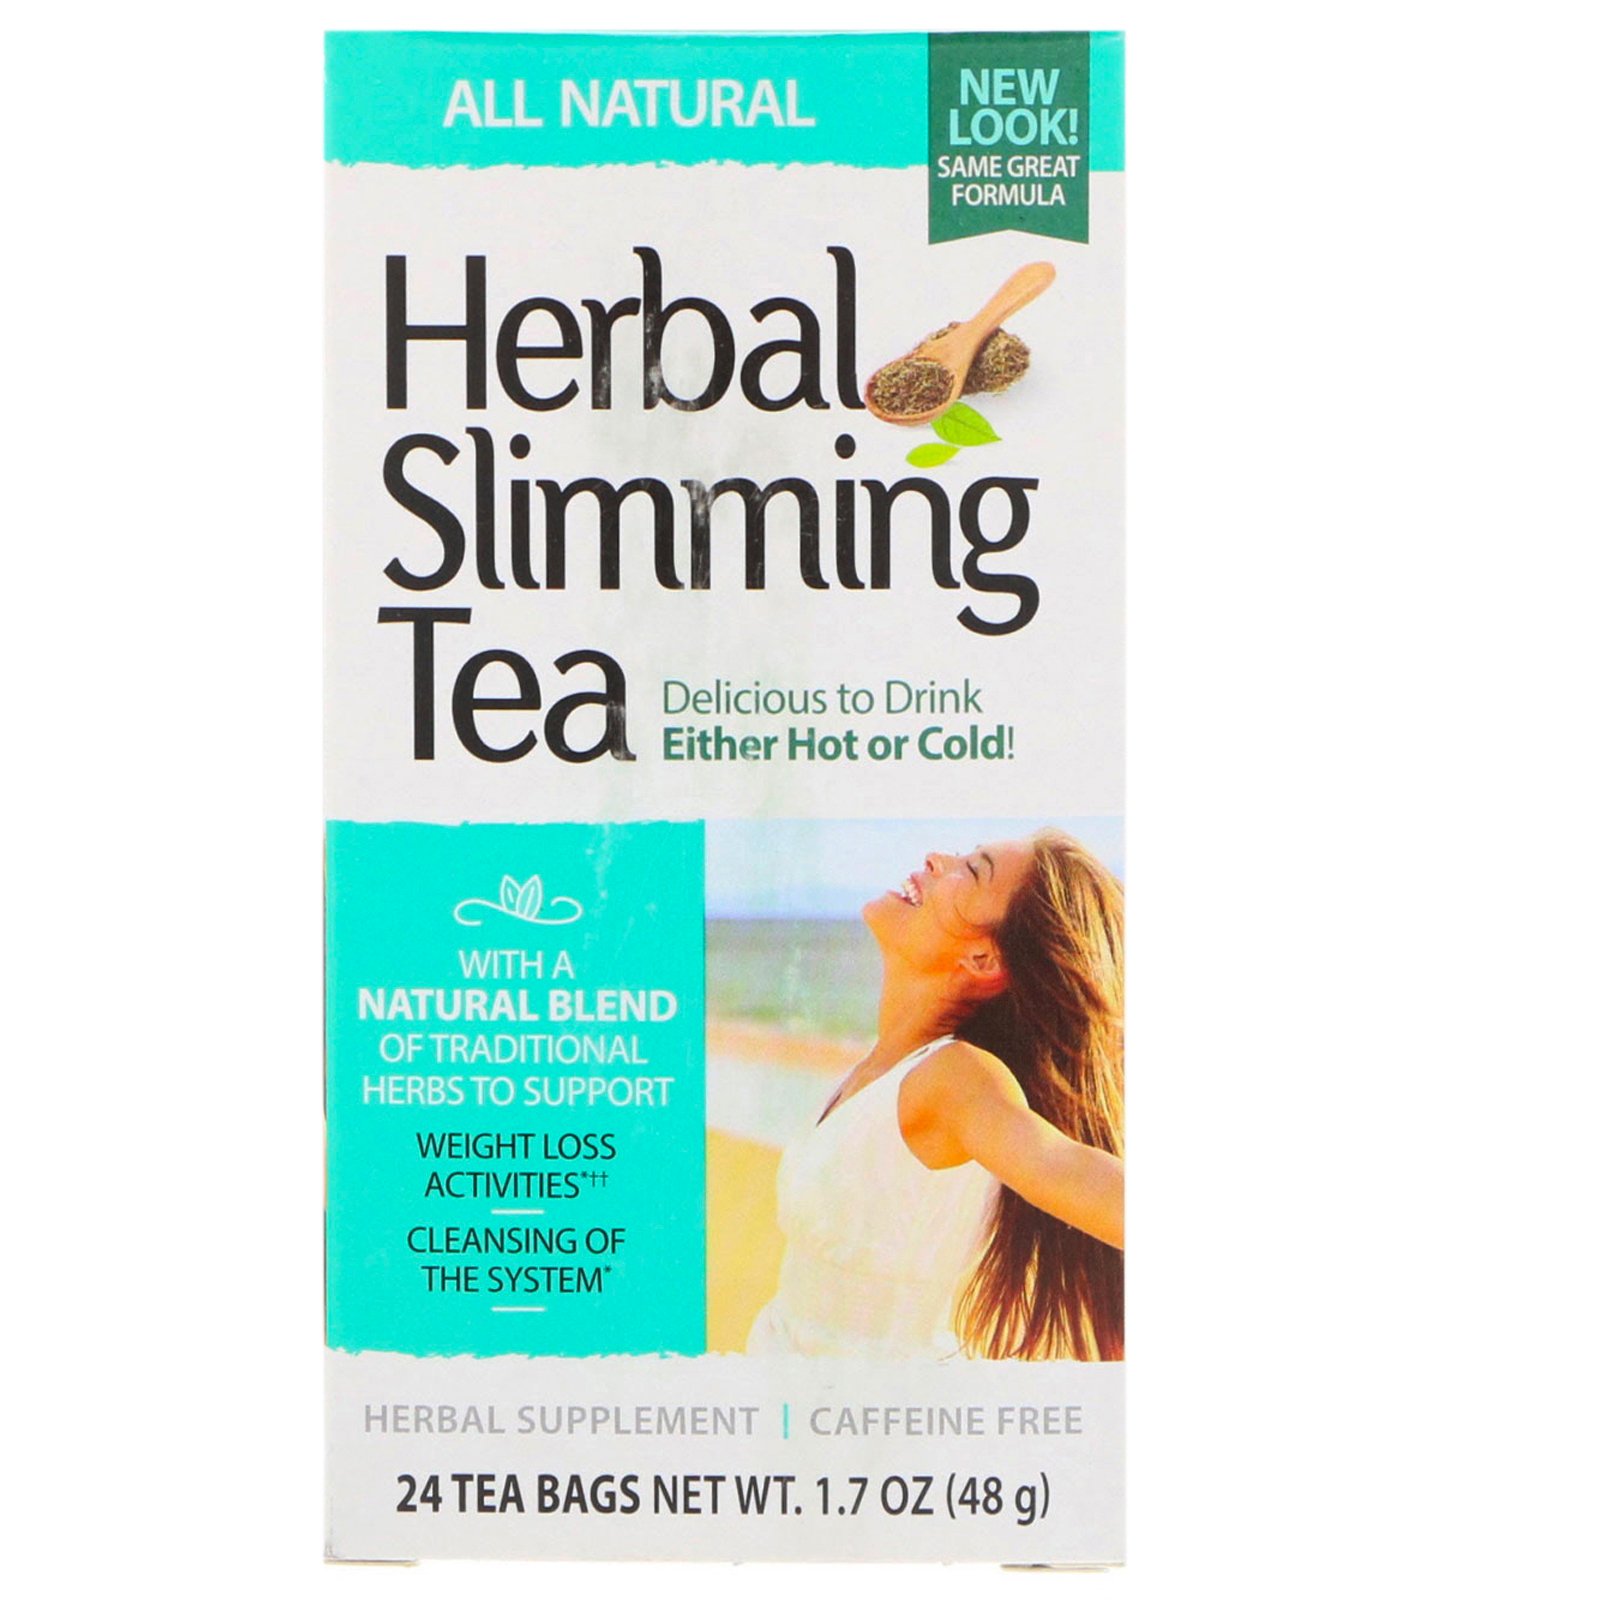 werbal slimming ceai 21 review secol